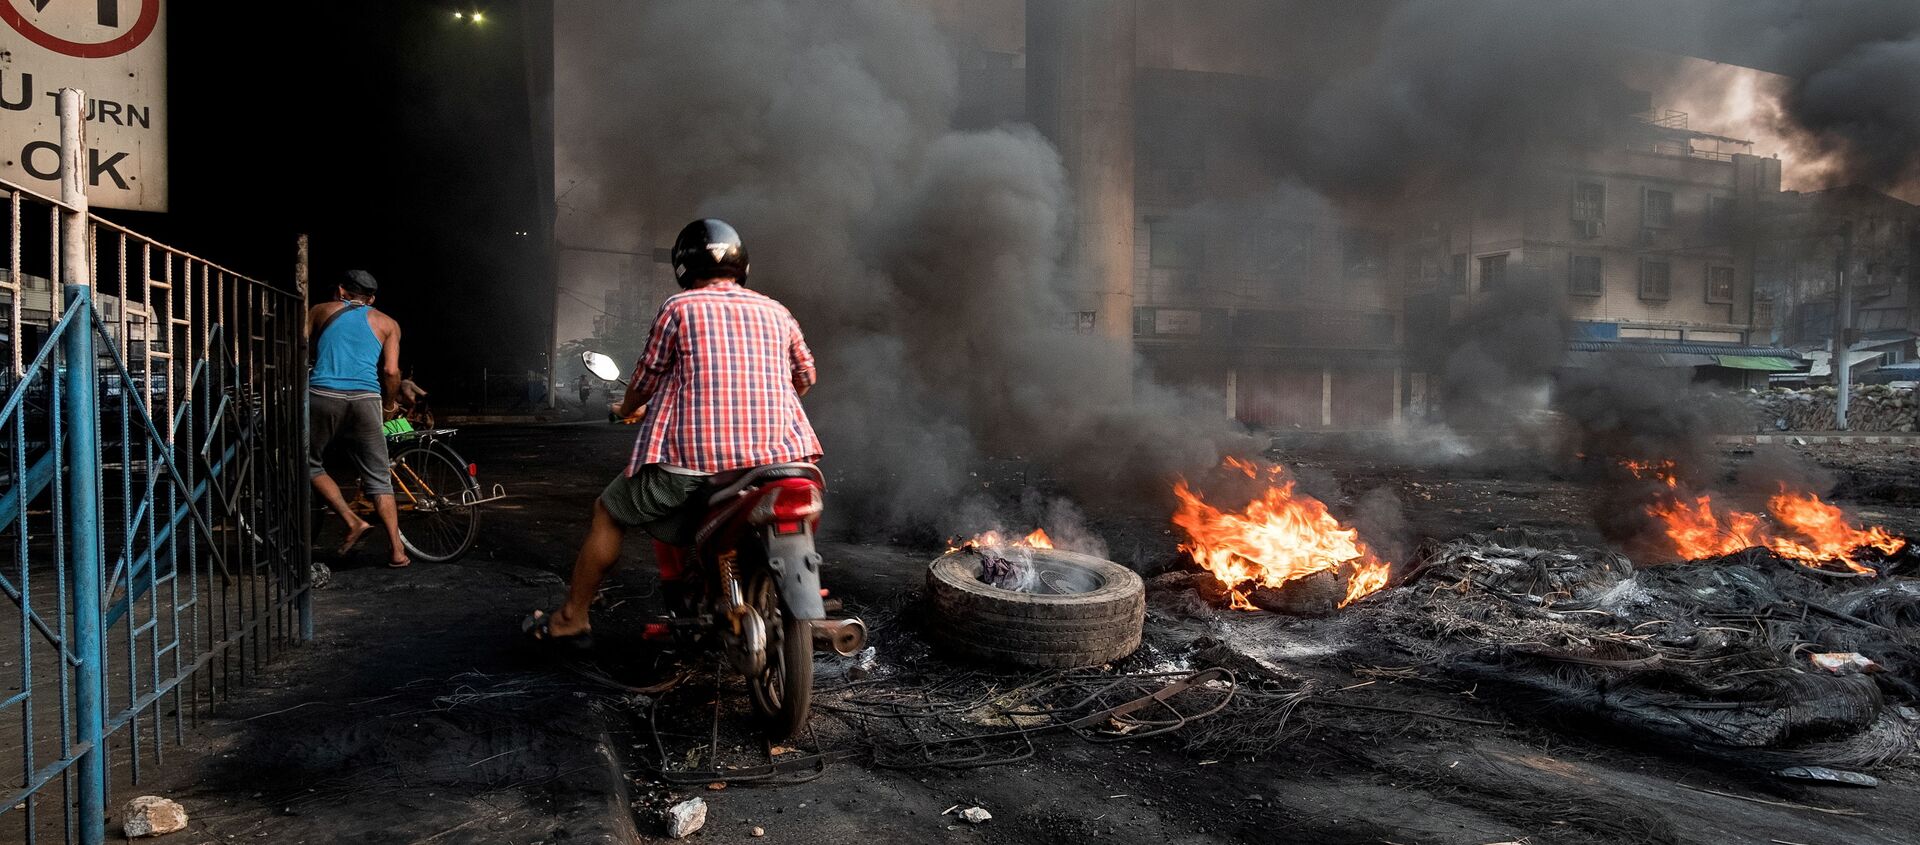 Khói bốc lên từ lốp xe đang cháy bốc lên tạo ra khói bao phủ trong một cuộc trấn áp tại Bayint Naung Junction ở Yangon, Myanmar ngày 16 tháng 3 năm 2021, trong bức ảnh do Reuters thu được. - Sputnik Việt Nam, 1920, 02.04.2021